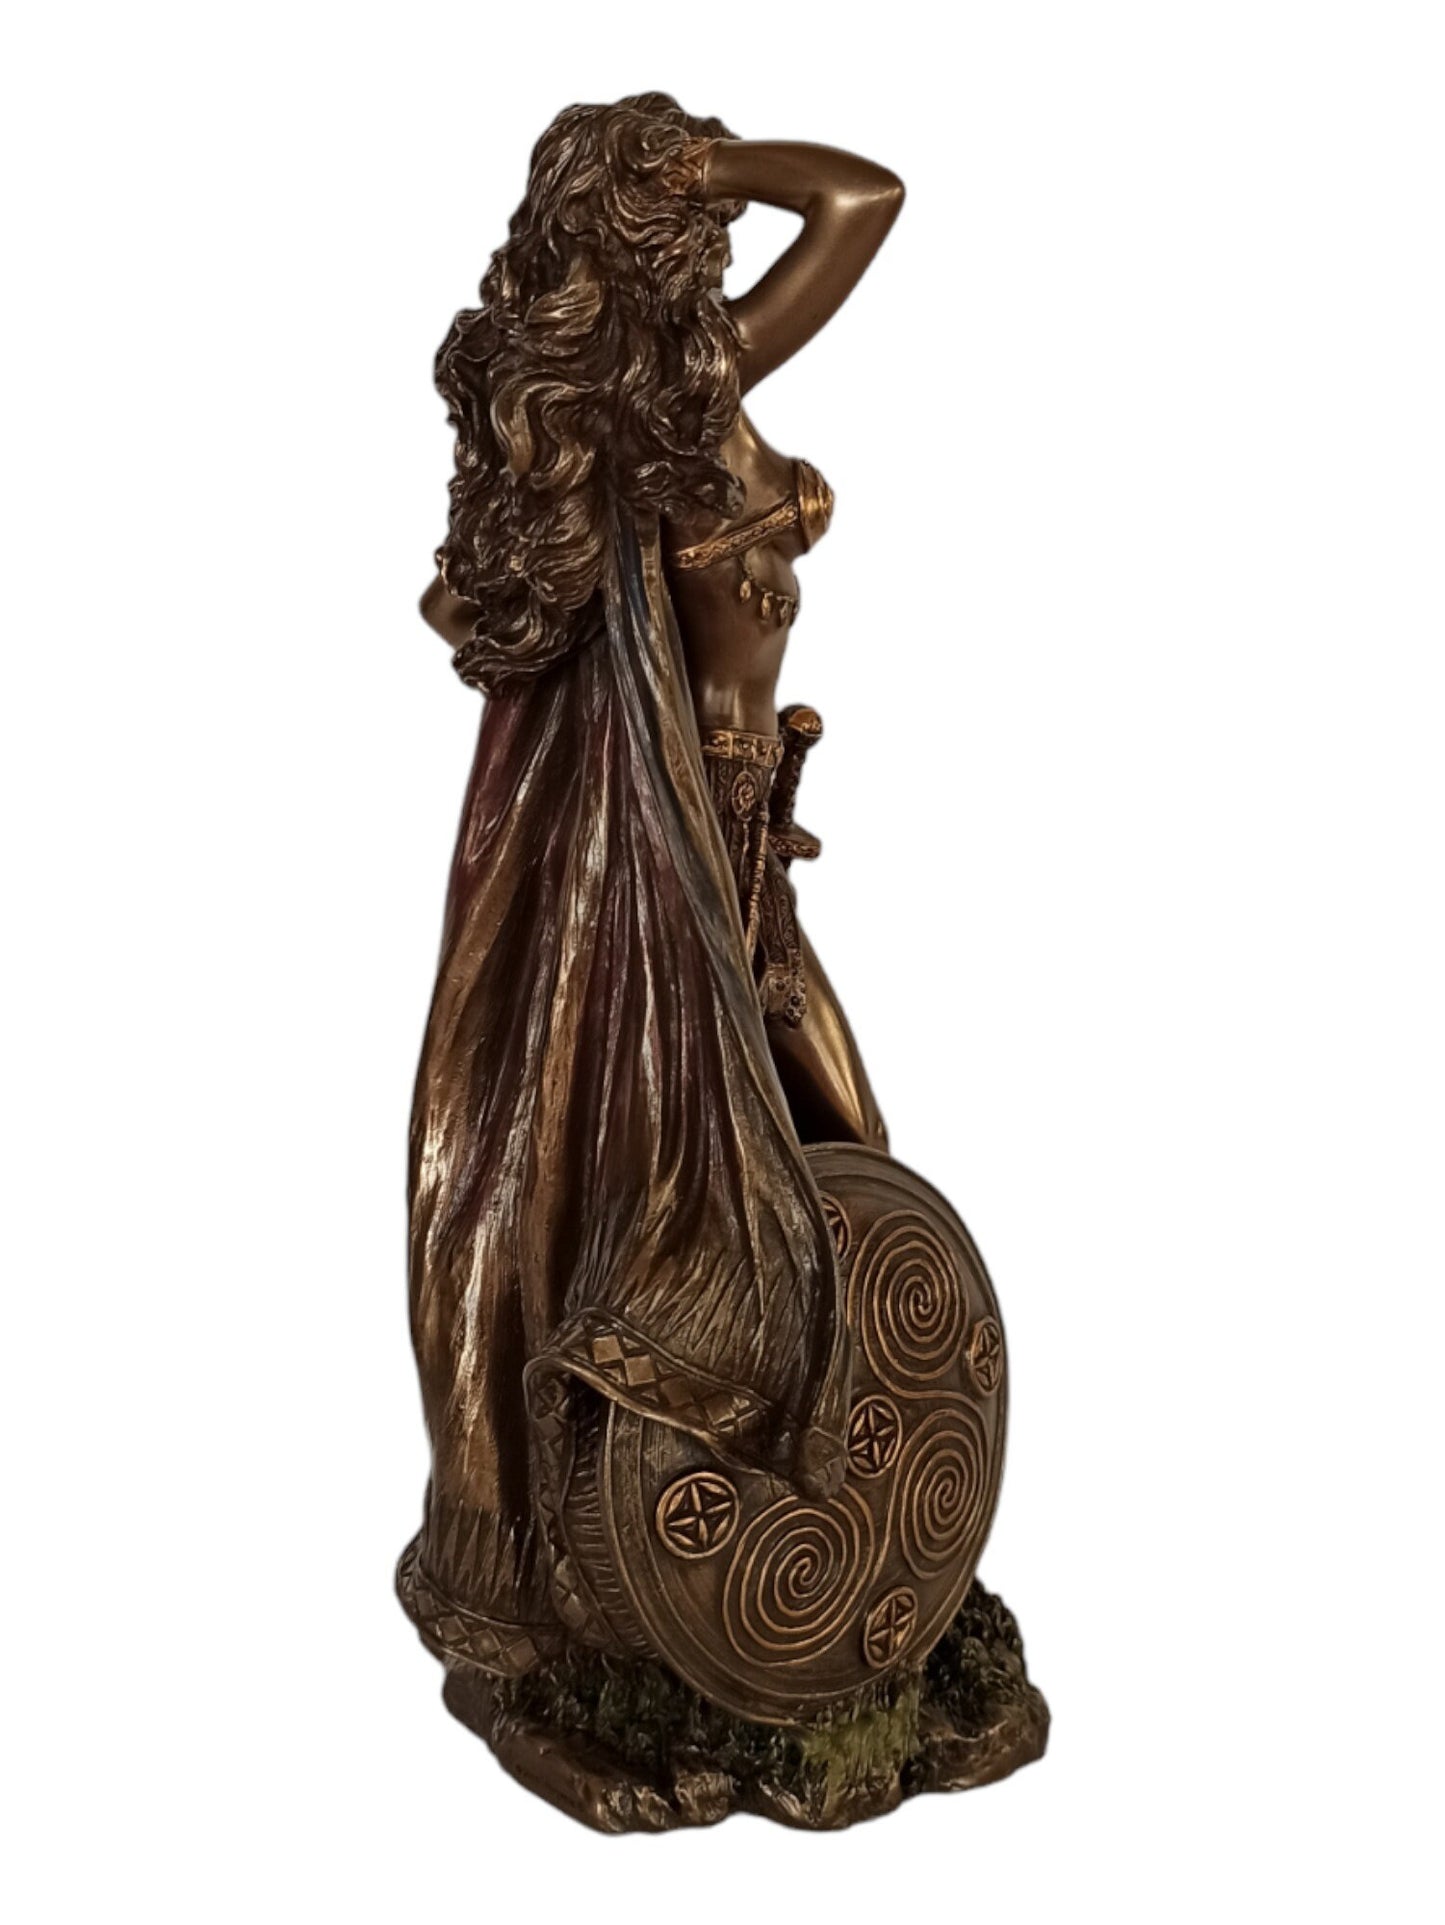 Freya Freyja - Norse Goddess associated with Love, Beauty, Fertility, Sex, War, Gold, and Seiðr - Cold Cast Bronze Resin